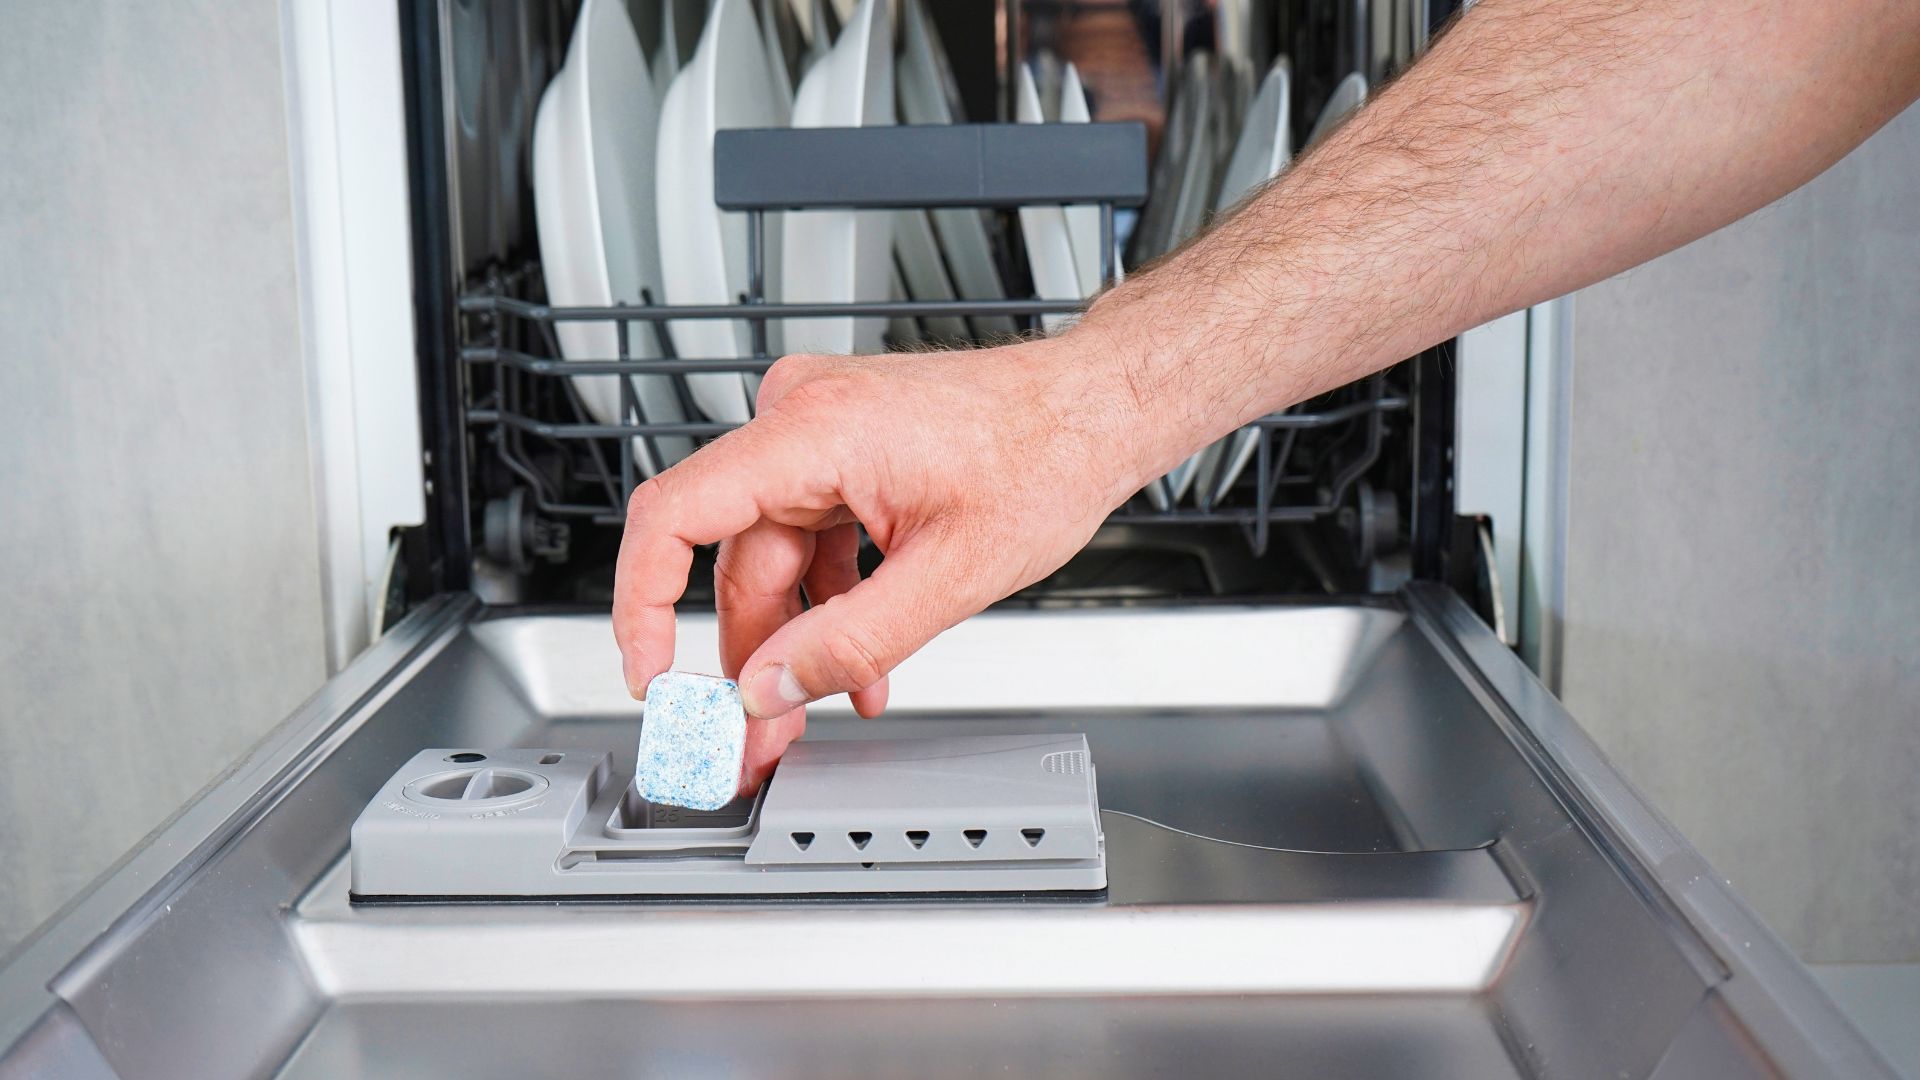 Steps to Take to Fix a Dishwasher That Won't Drain